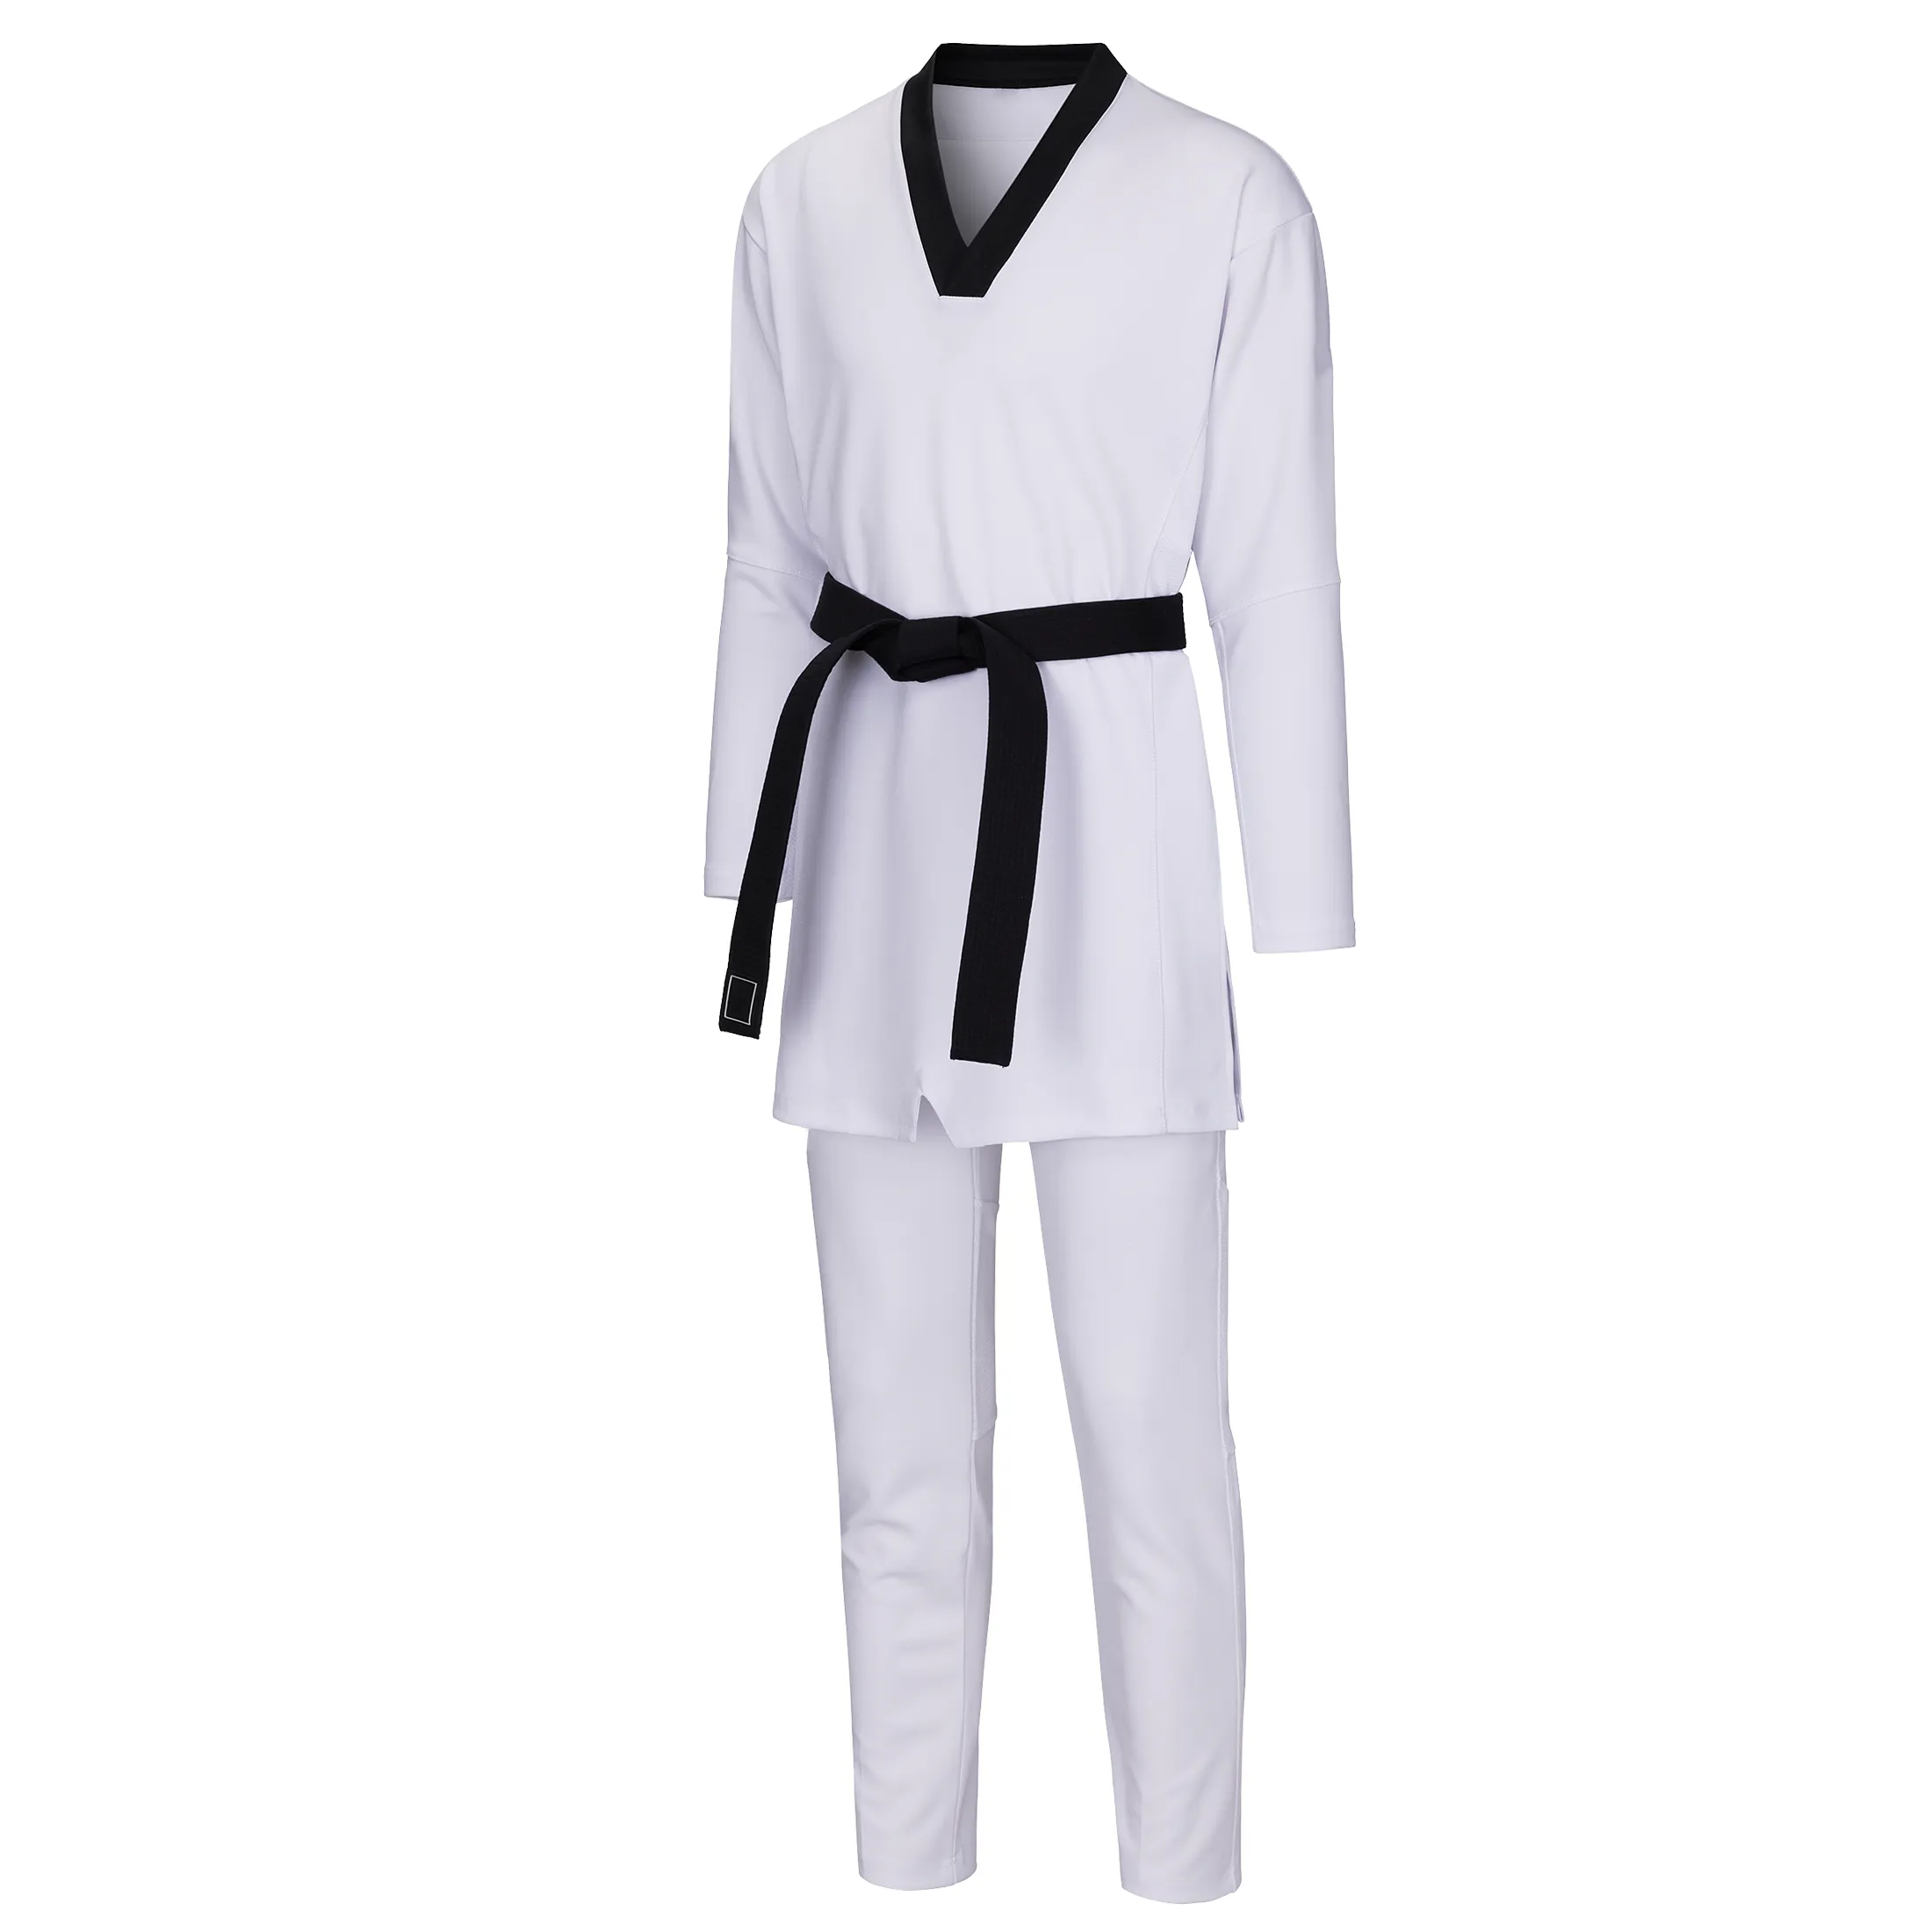 Prix bon marché Prix de gros 2023DynamicFit pratique Taekwondo Uniform Set Libérez votre potentiel avec performance et confort